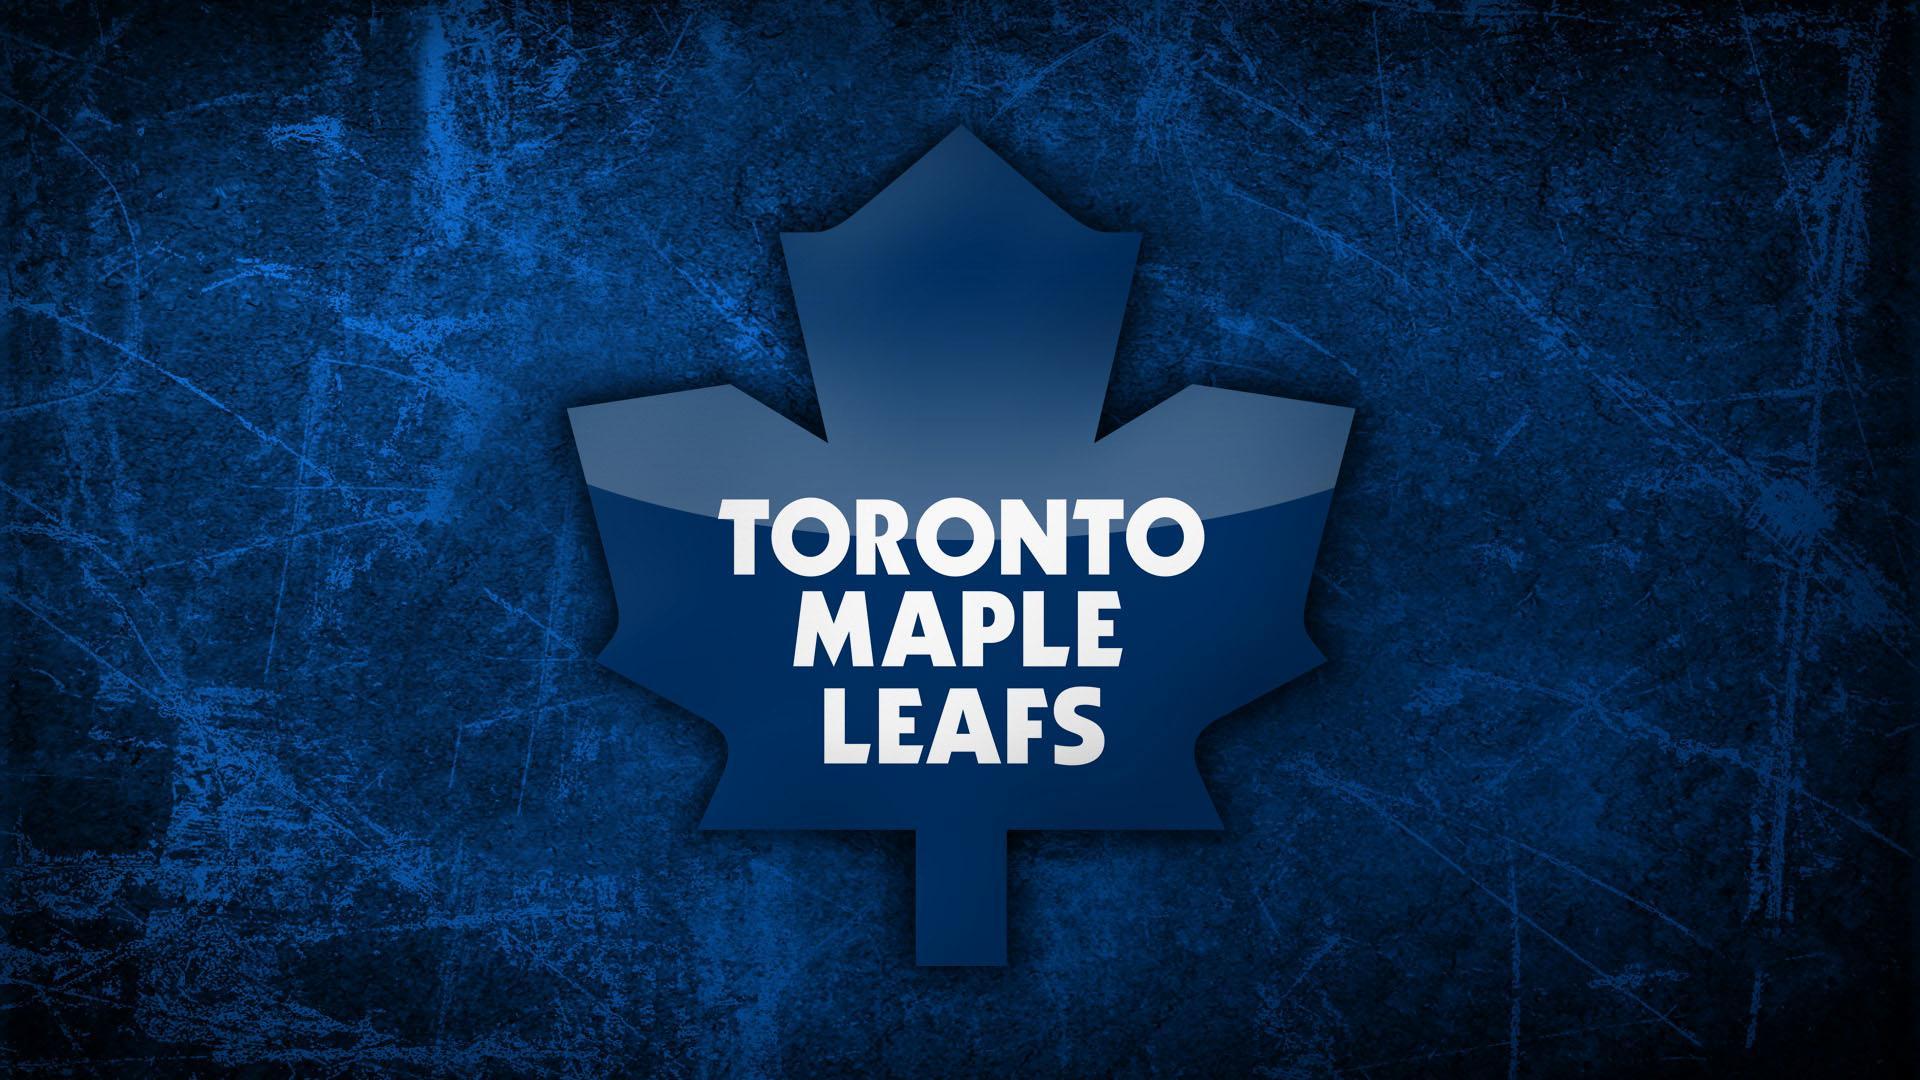 Toronto Maple Leafs Wallpaper HD. (55++ Wallpaper)